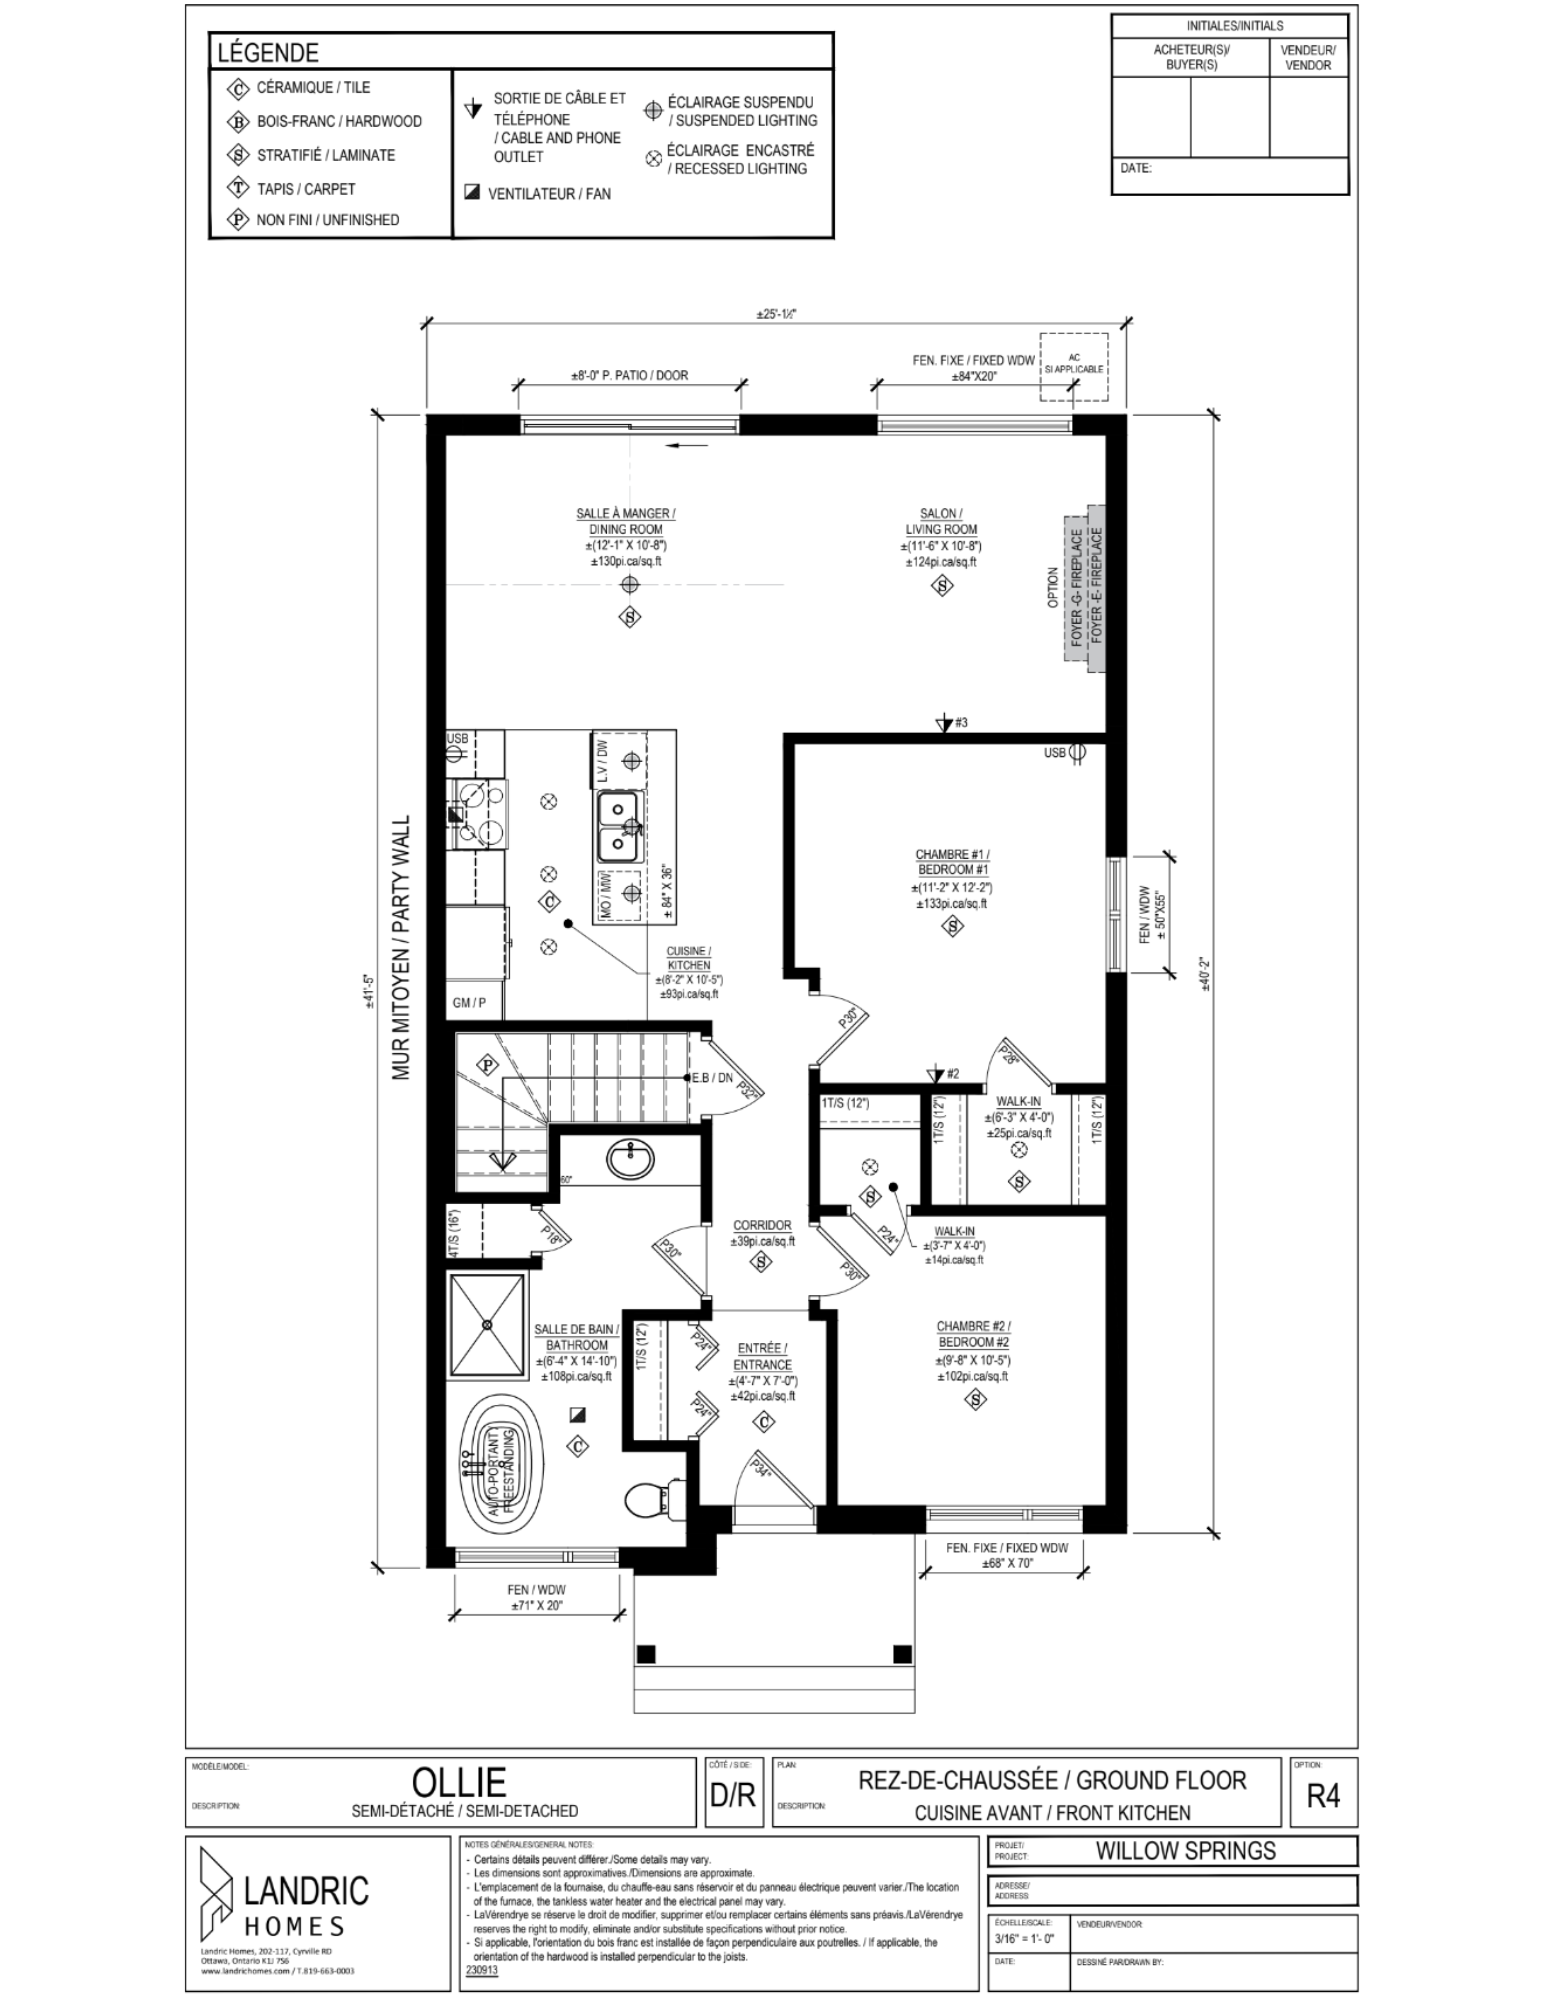 Willow Springs, Limoges floor plans (7)